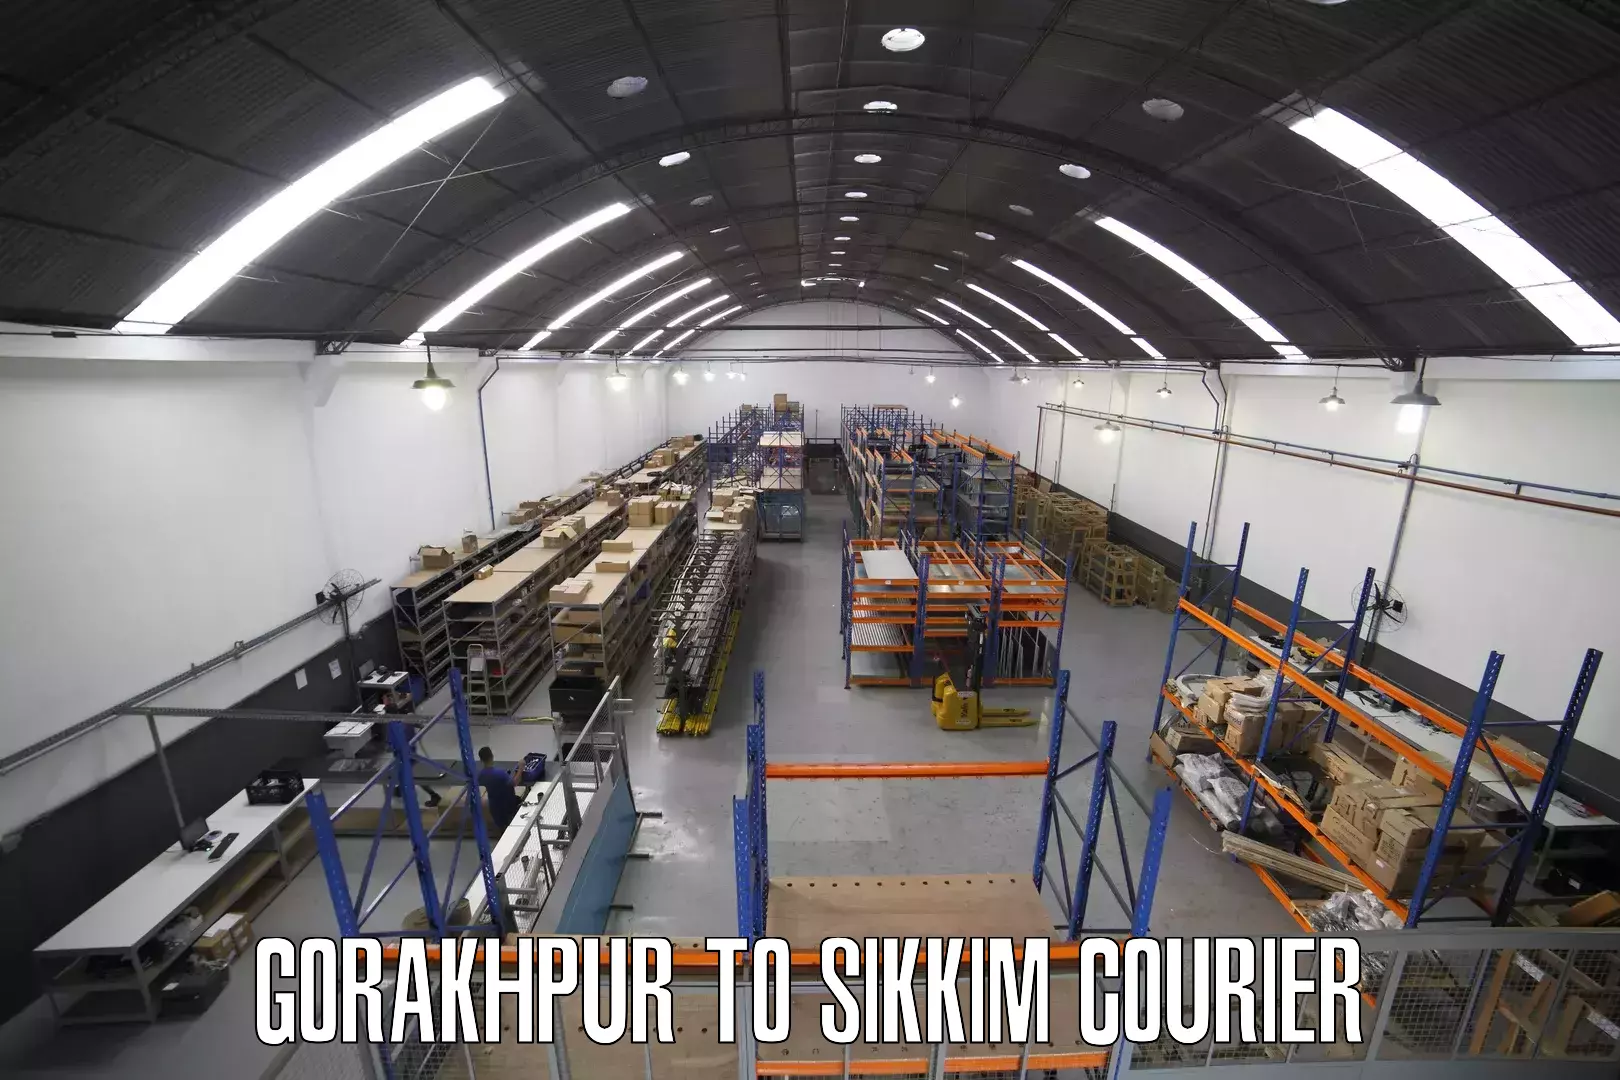 Flexible shipping options Gorakhpur to Rangpo